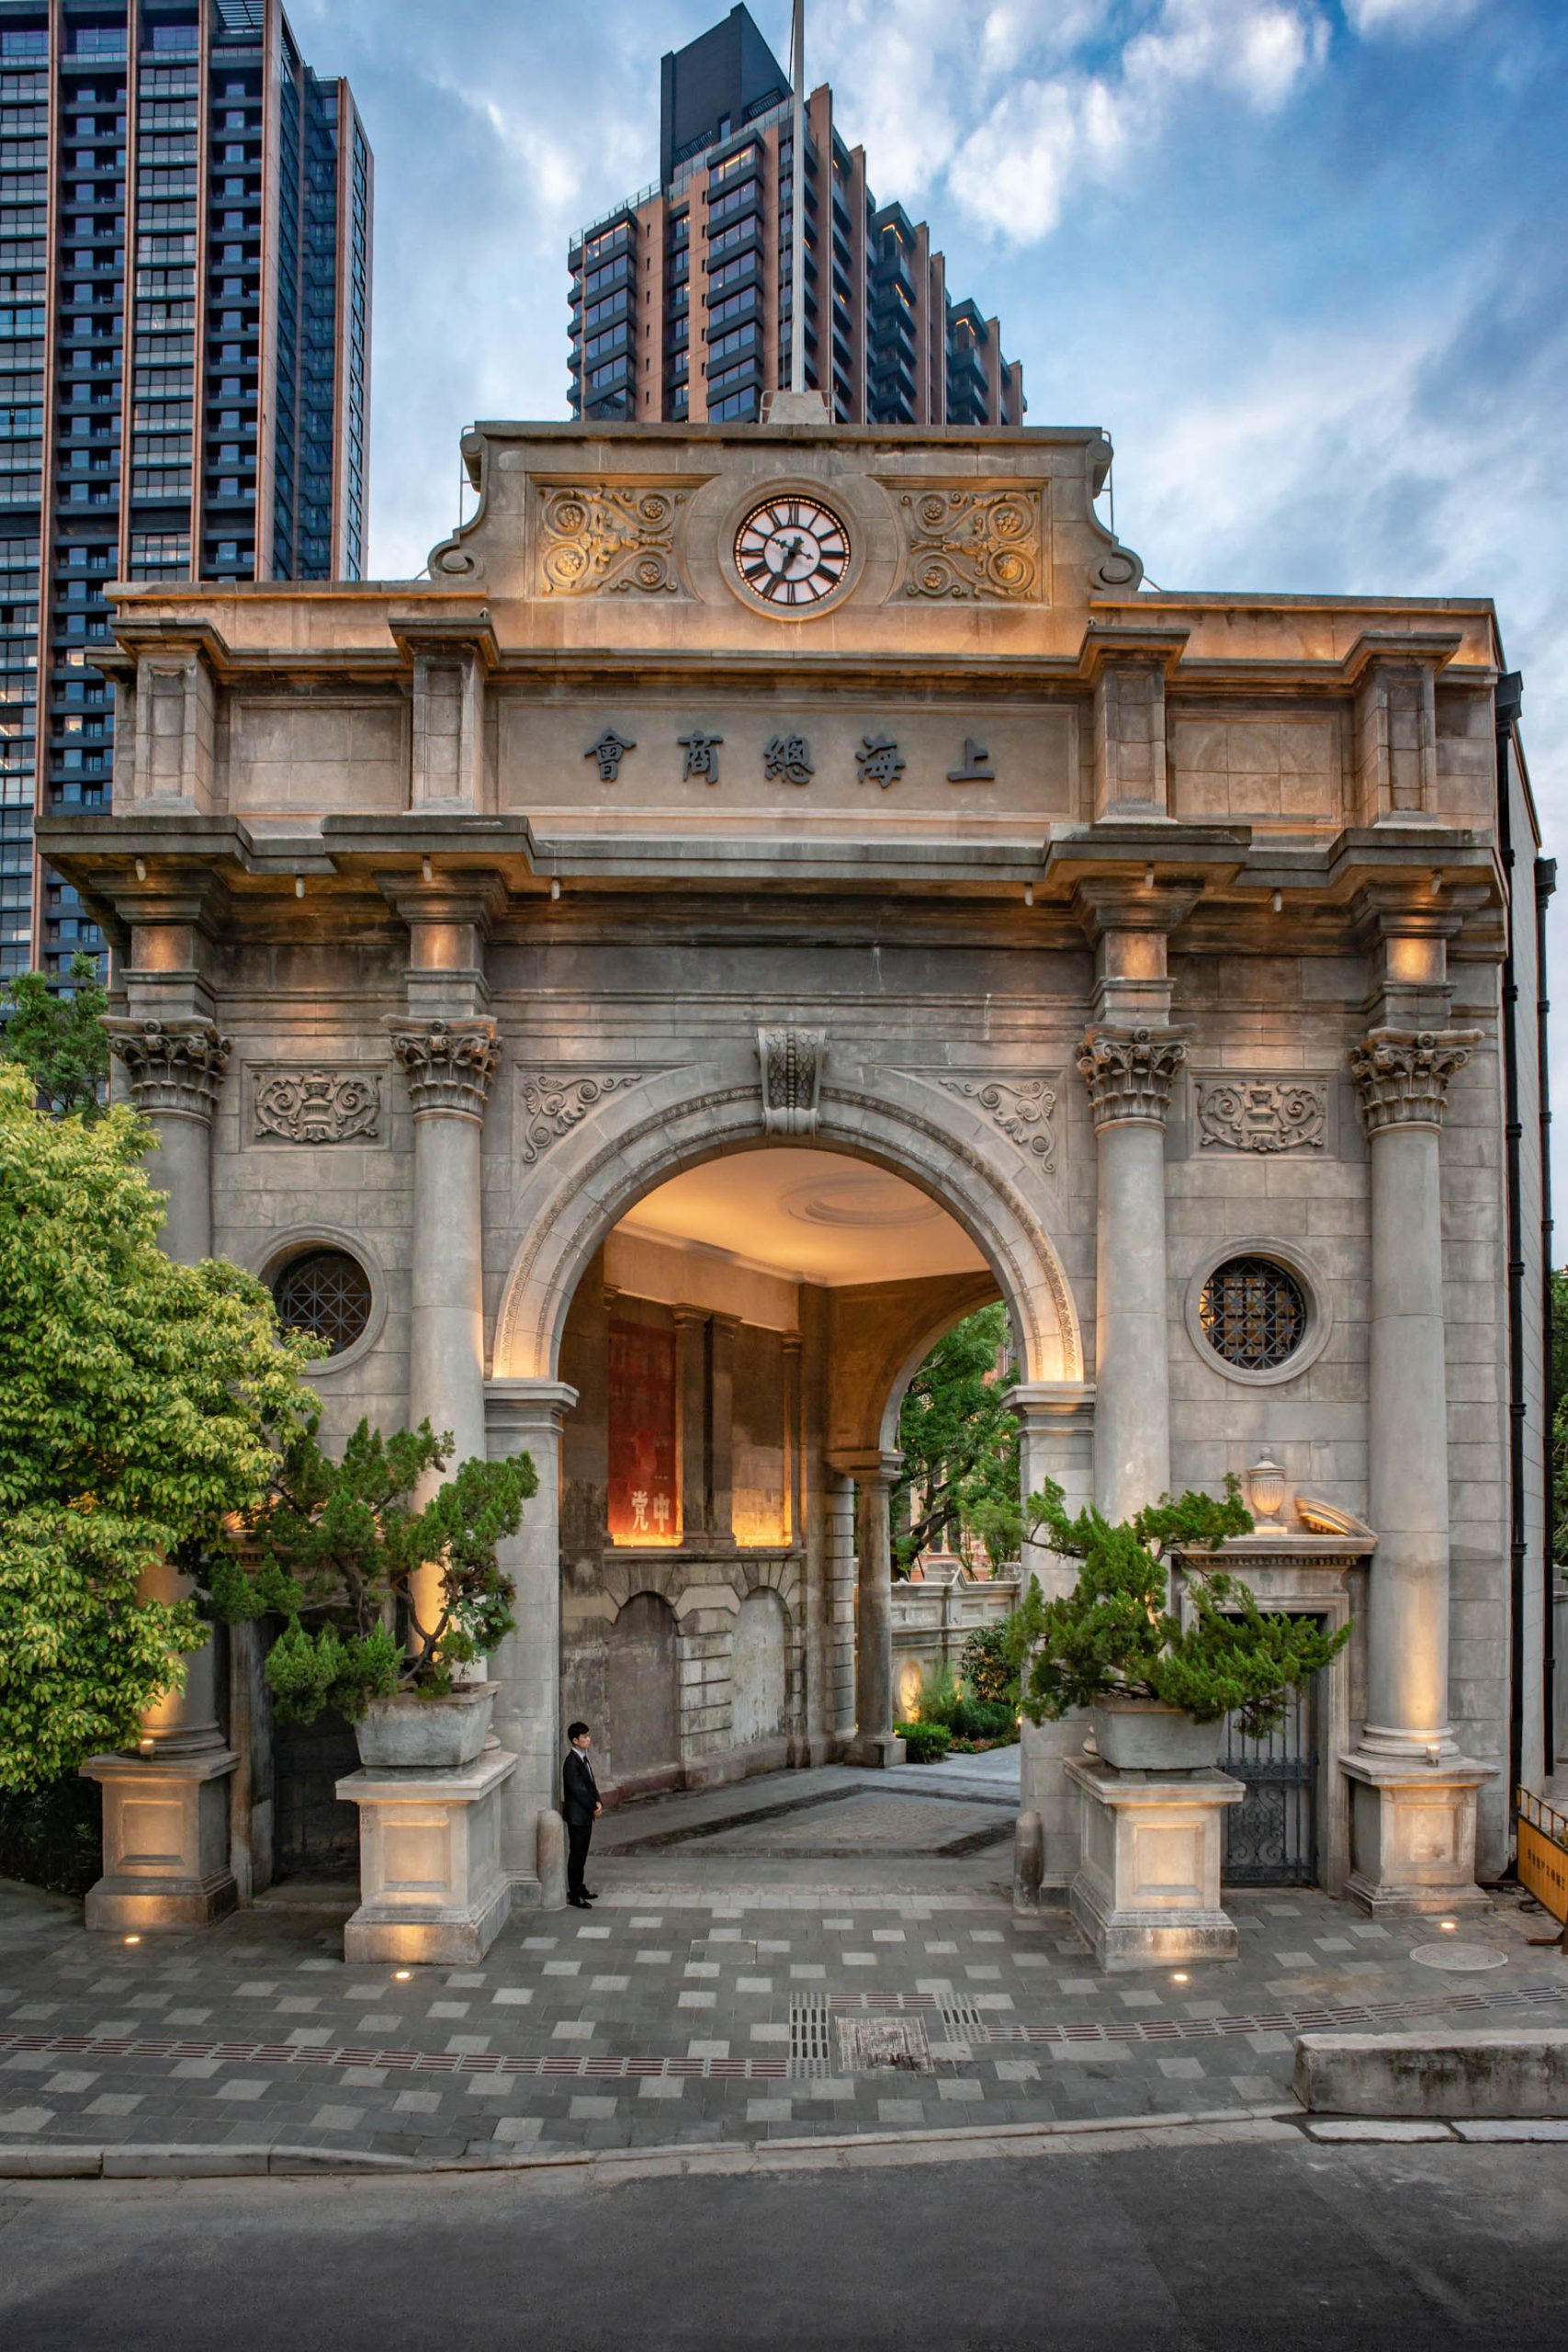 Bvlgari Hotel Shanghai – Shanghai, China – The Gate